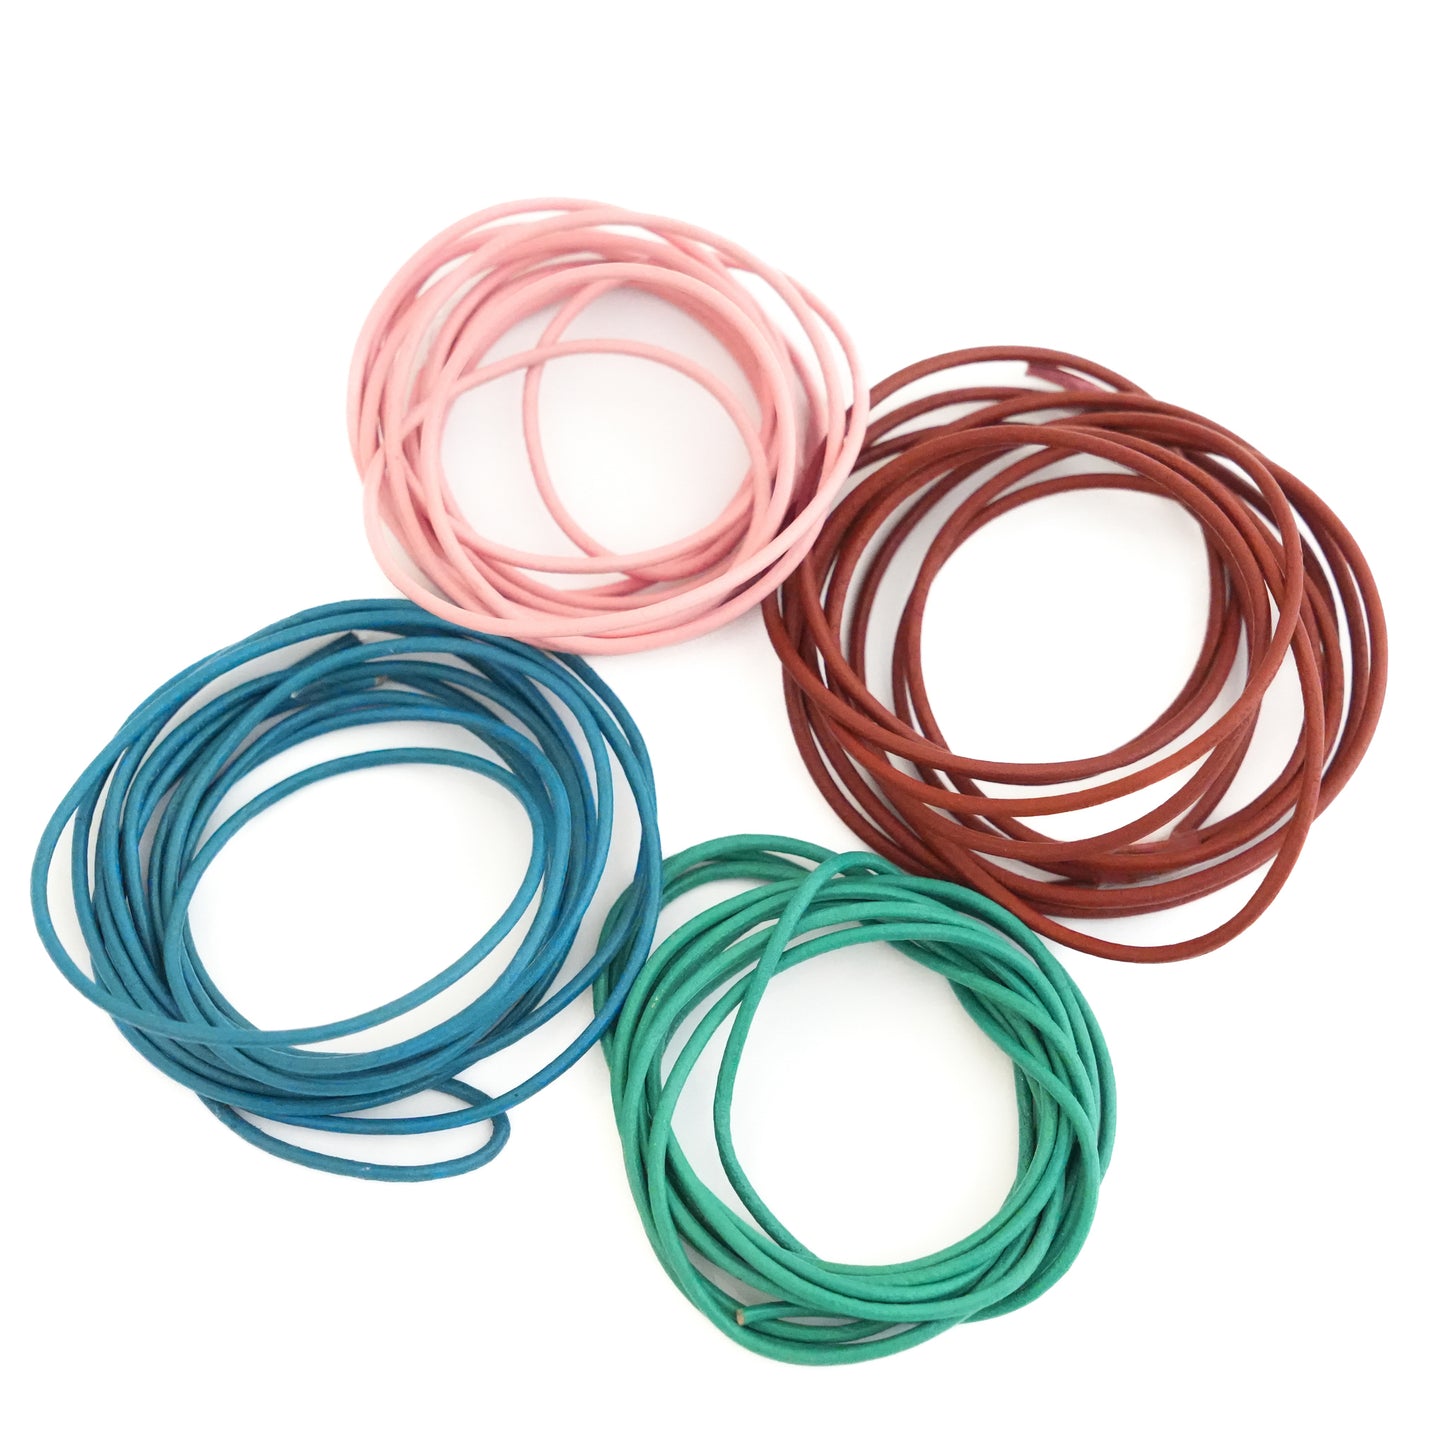 NOBEL Cords Color Pack